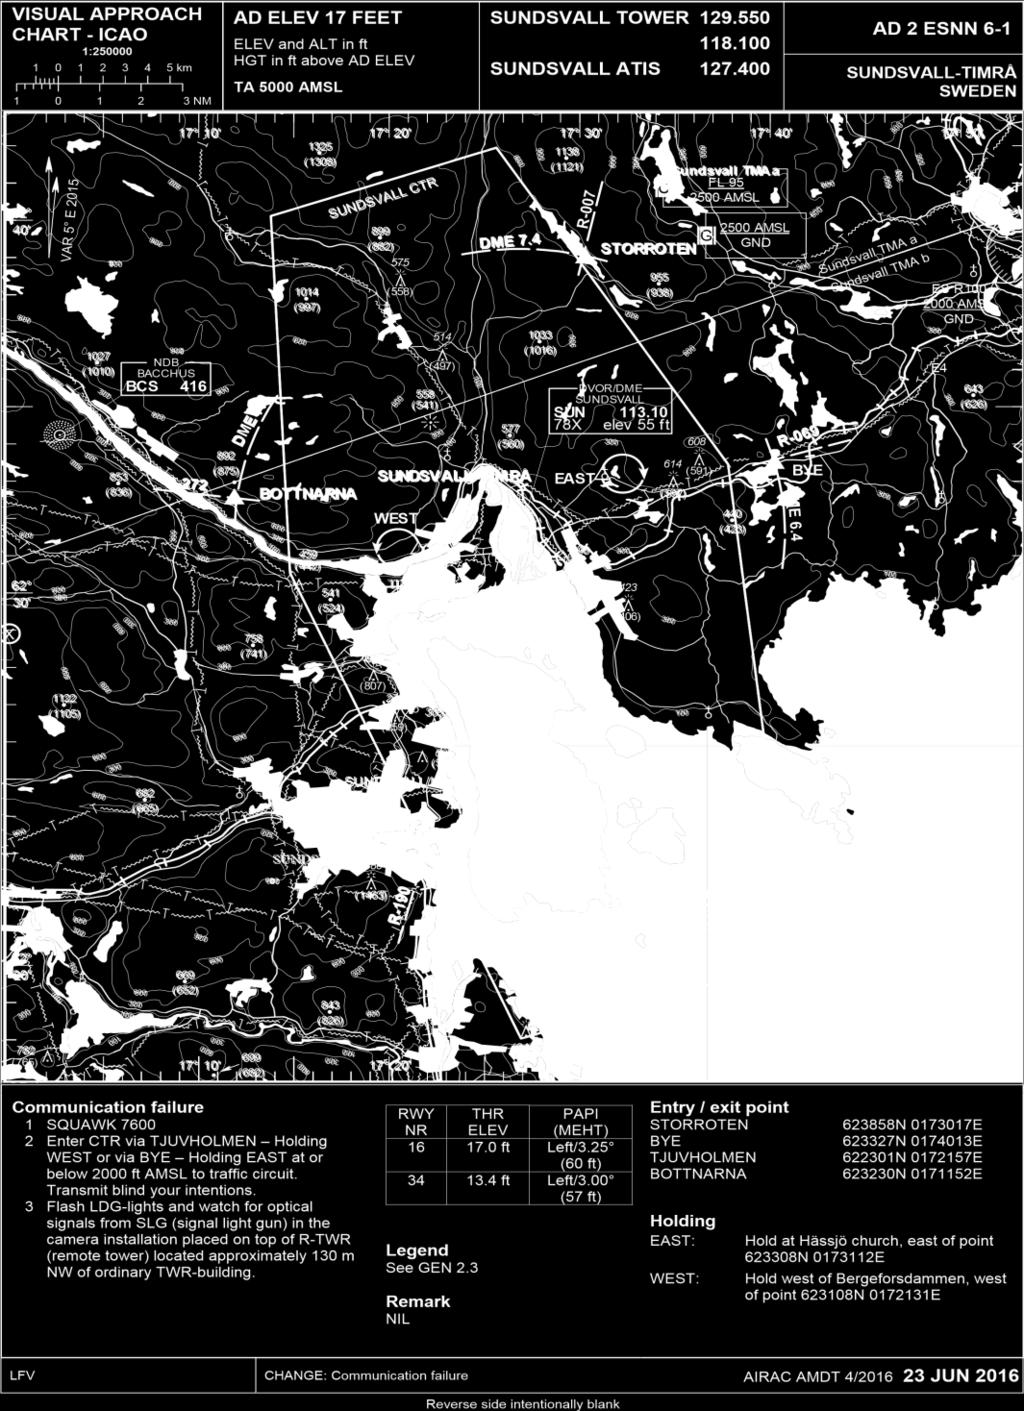 Vid Sundsvall-Timrå flygplats har man tagit fram en karta som illustrerar principen, se bilaga 3.